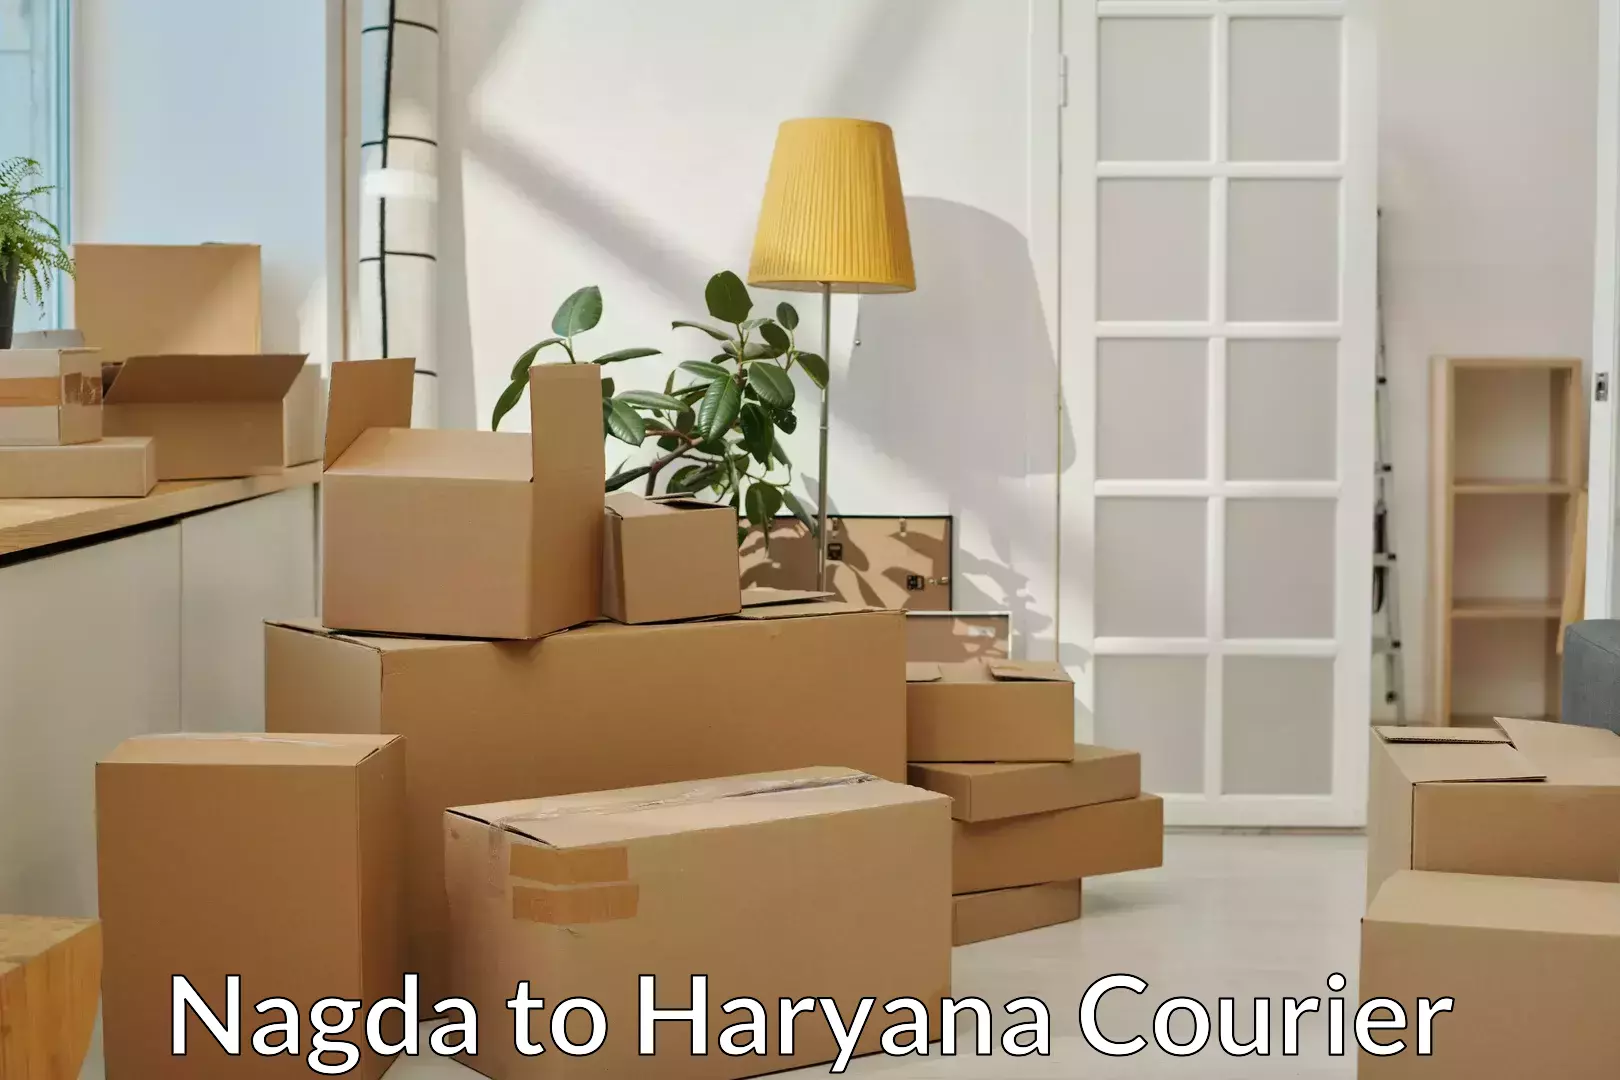 Hassle-free relocation Nagda to Chaudhary Charan Singh Haryana Agricultural University Hisar